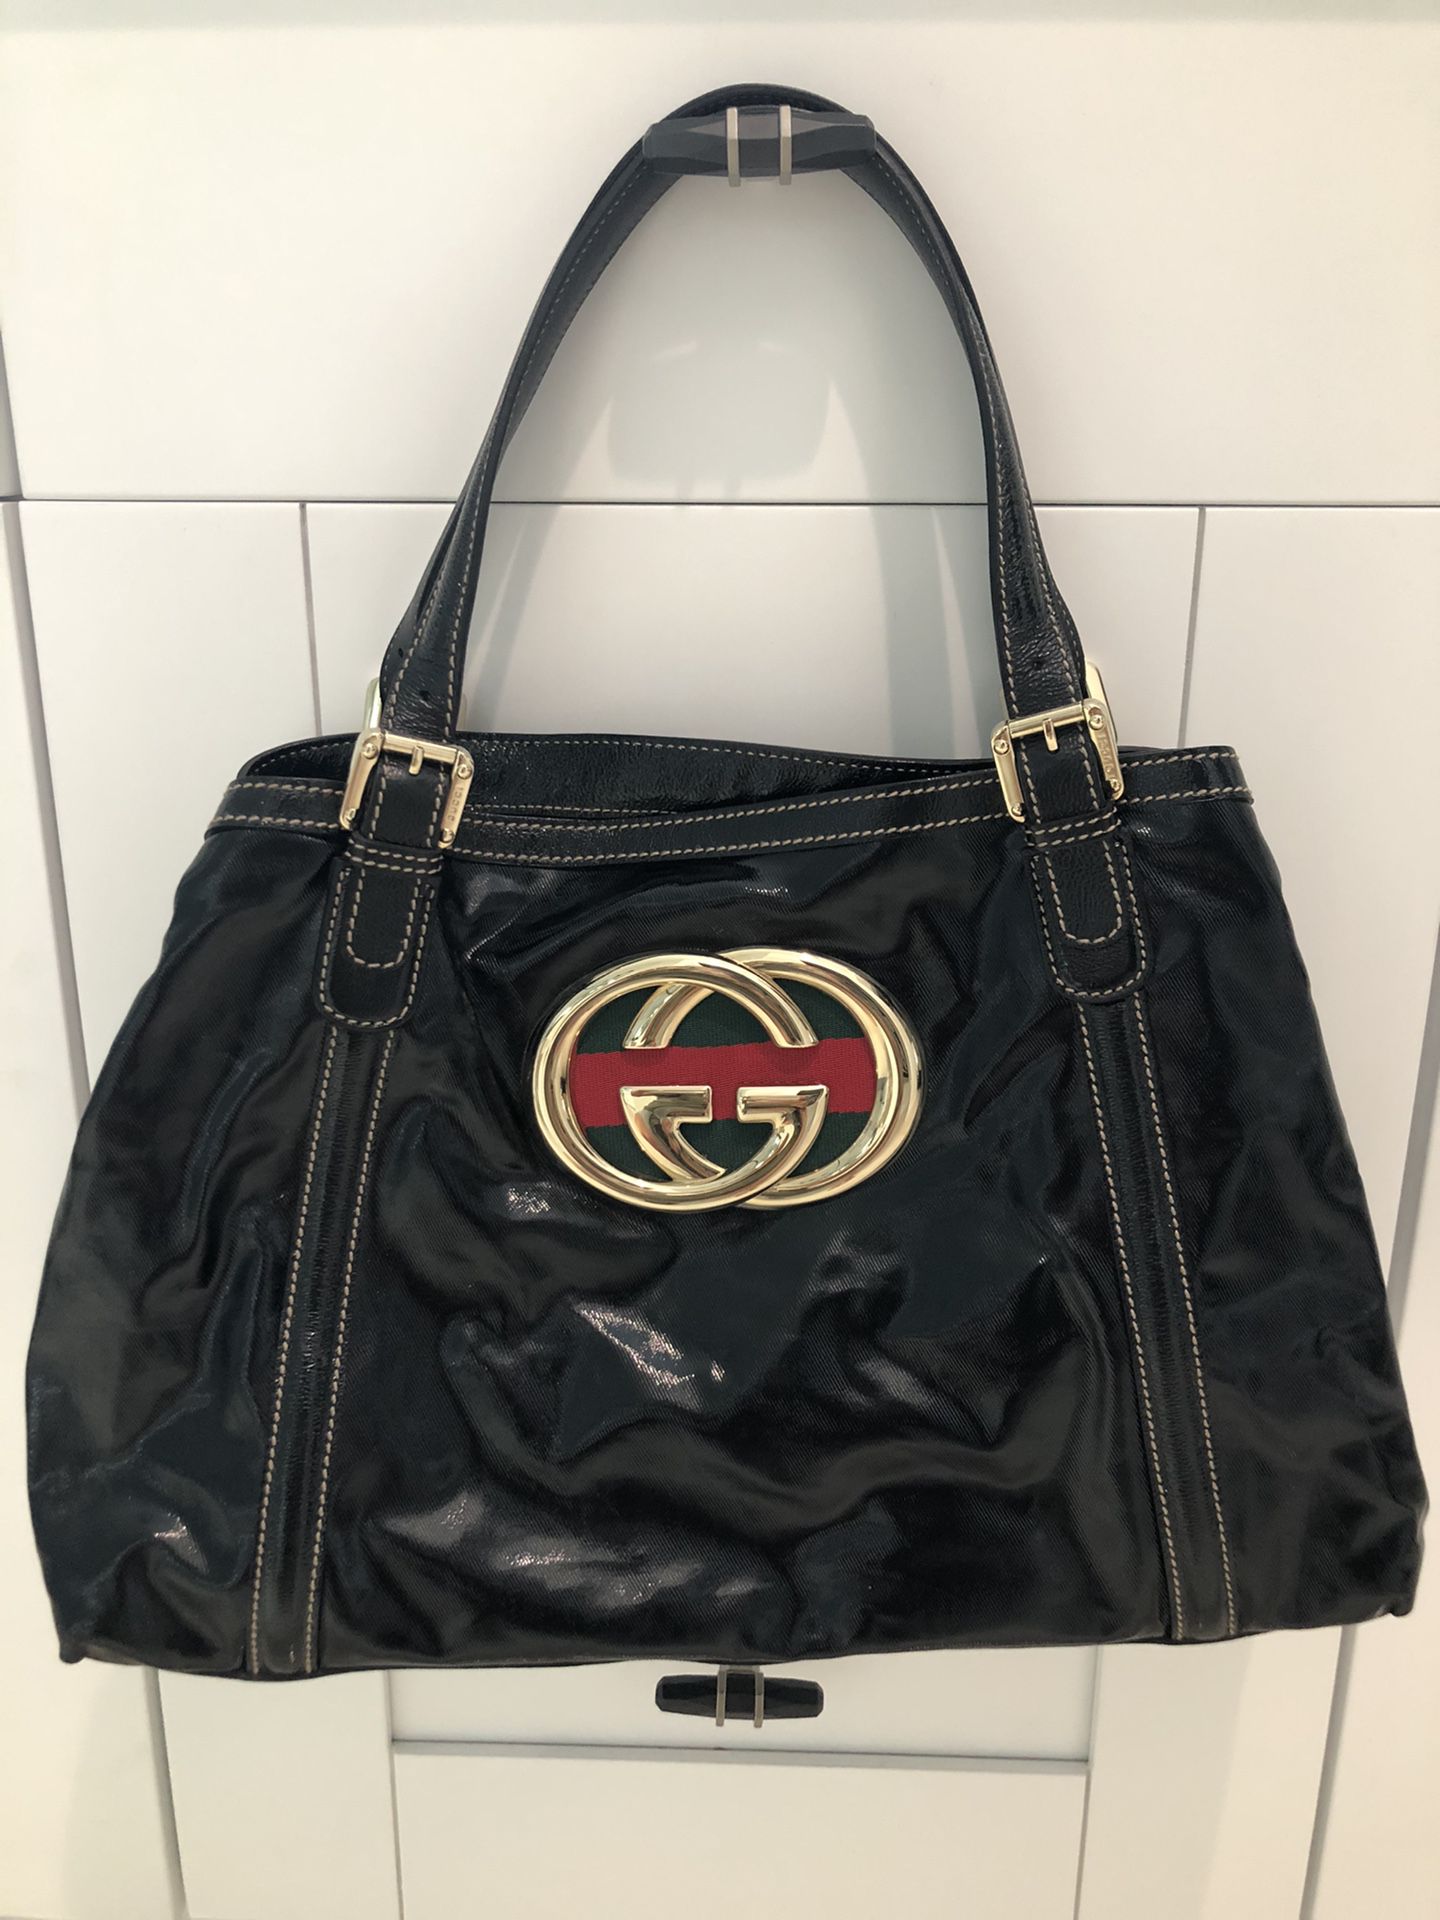 Gucci “Britt” handbag